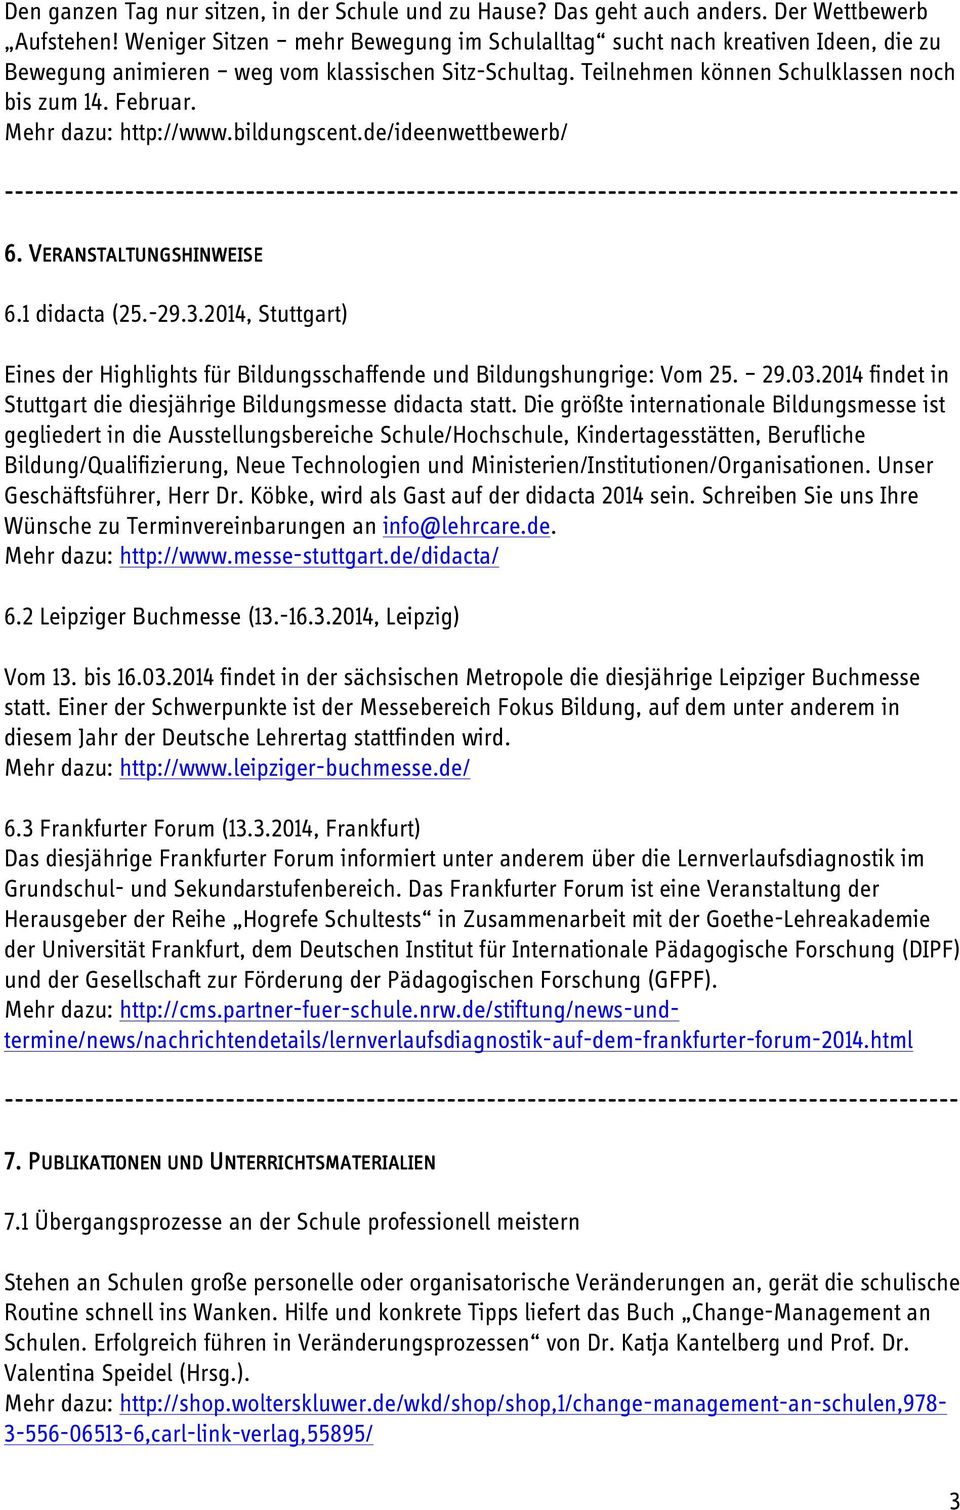 Mehr dazu: http://www.bildungscent.de/ideenwettbewerb/ 6. 6. VERANSTALTUNGSHINWEIS ERANSTALTUNGSHINWEISE 6.1 didacta (25.-29.3.